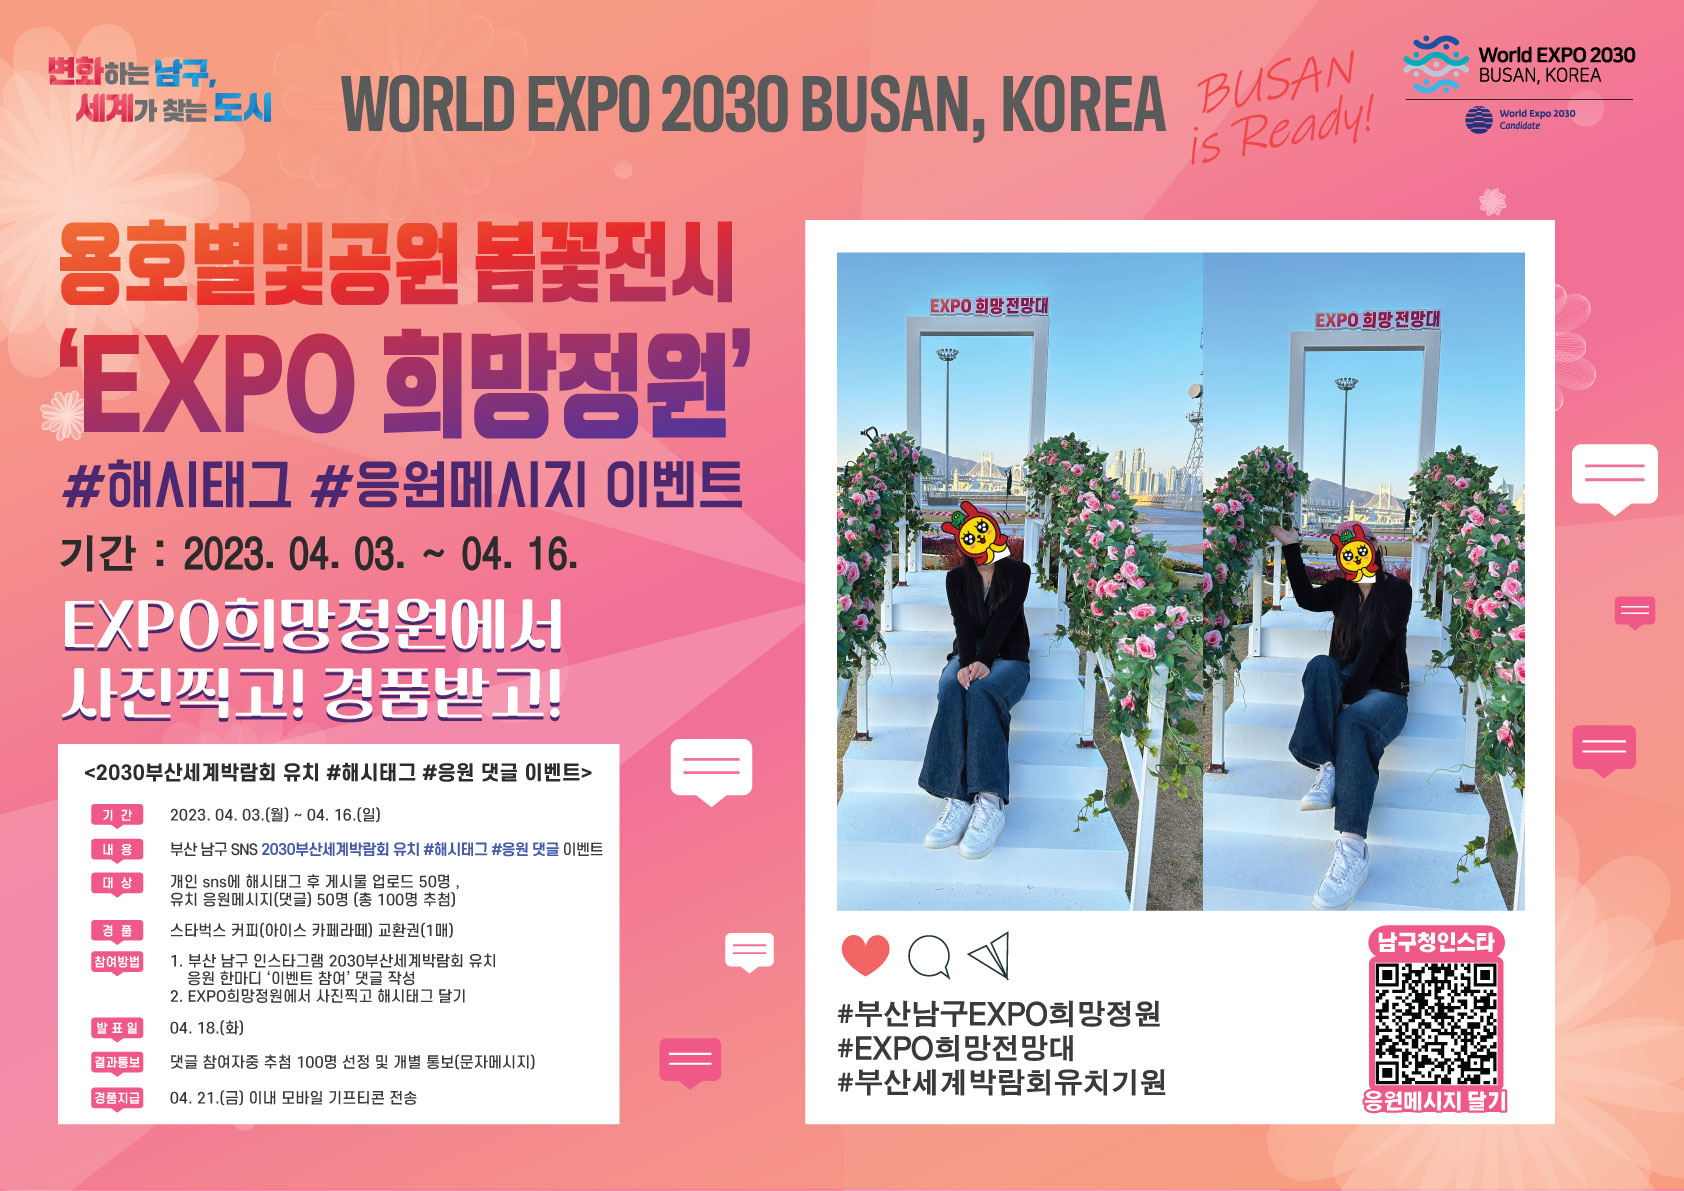 용호별빛공원 봄꽃전시 EXPO 희망정원 2030부산세계박람회 유치기원 SNS 이벤트 안내